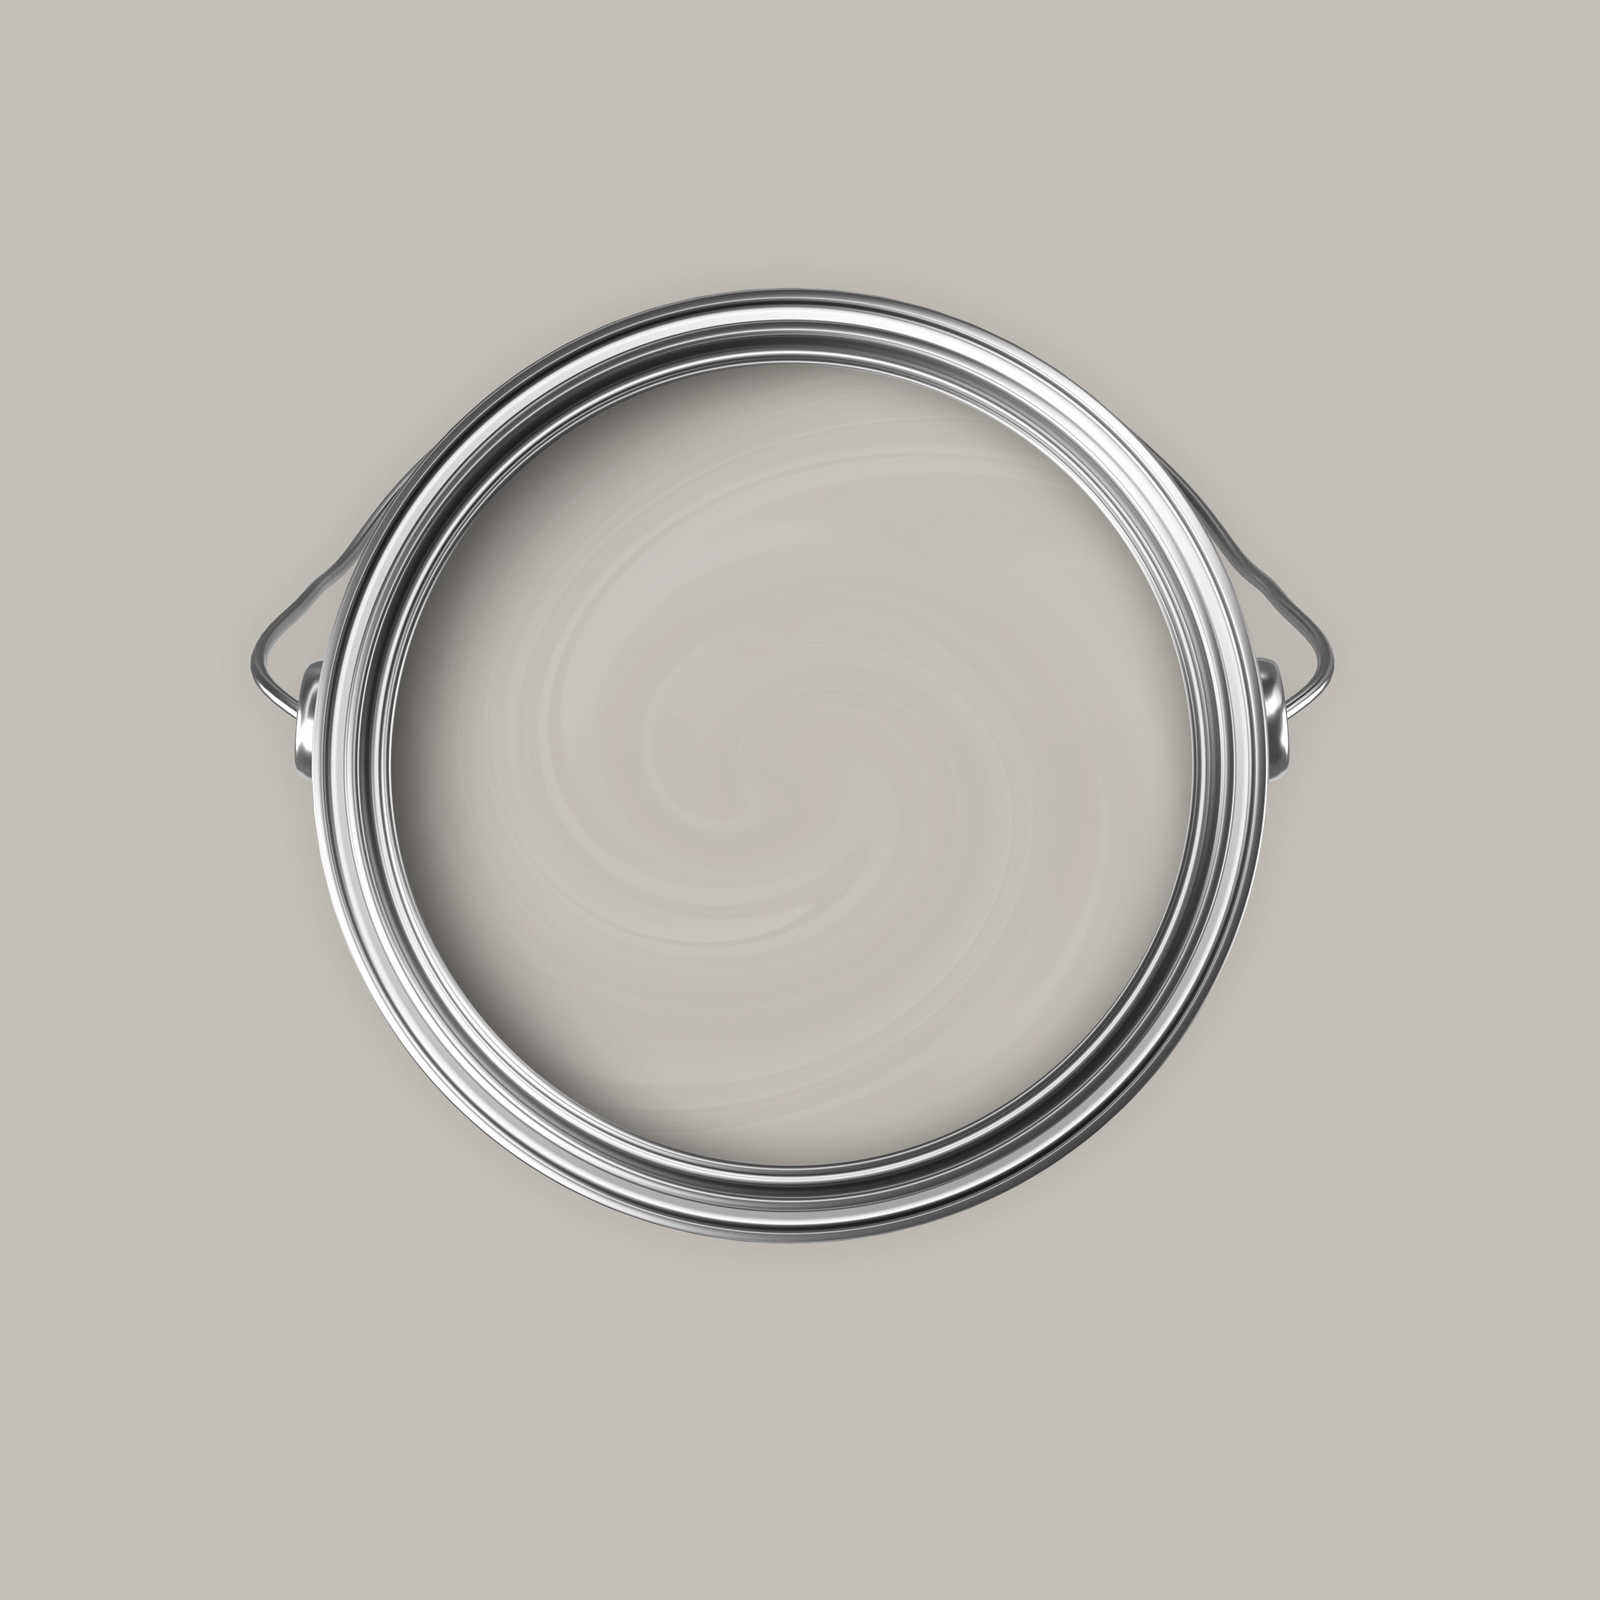             Premium Muurverf zacht zijdegrijs »Creamy Grey« NW111 – 5 liter
        